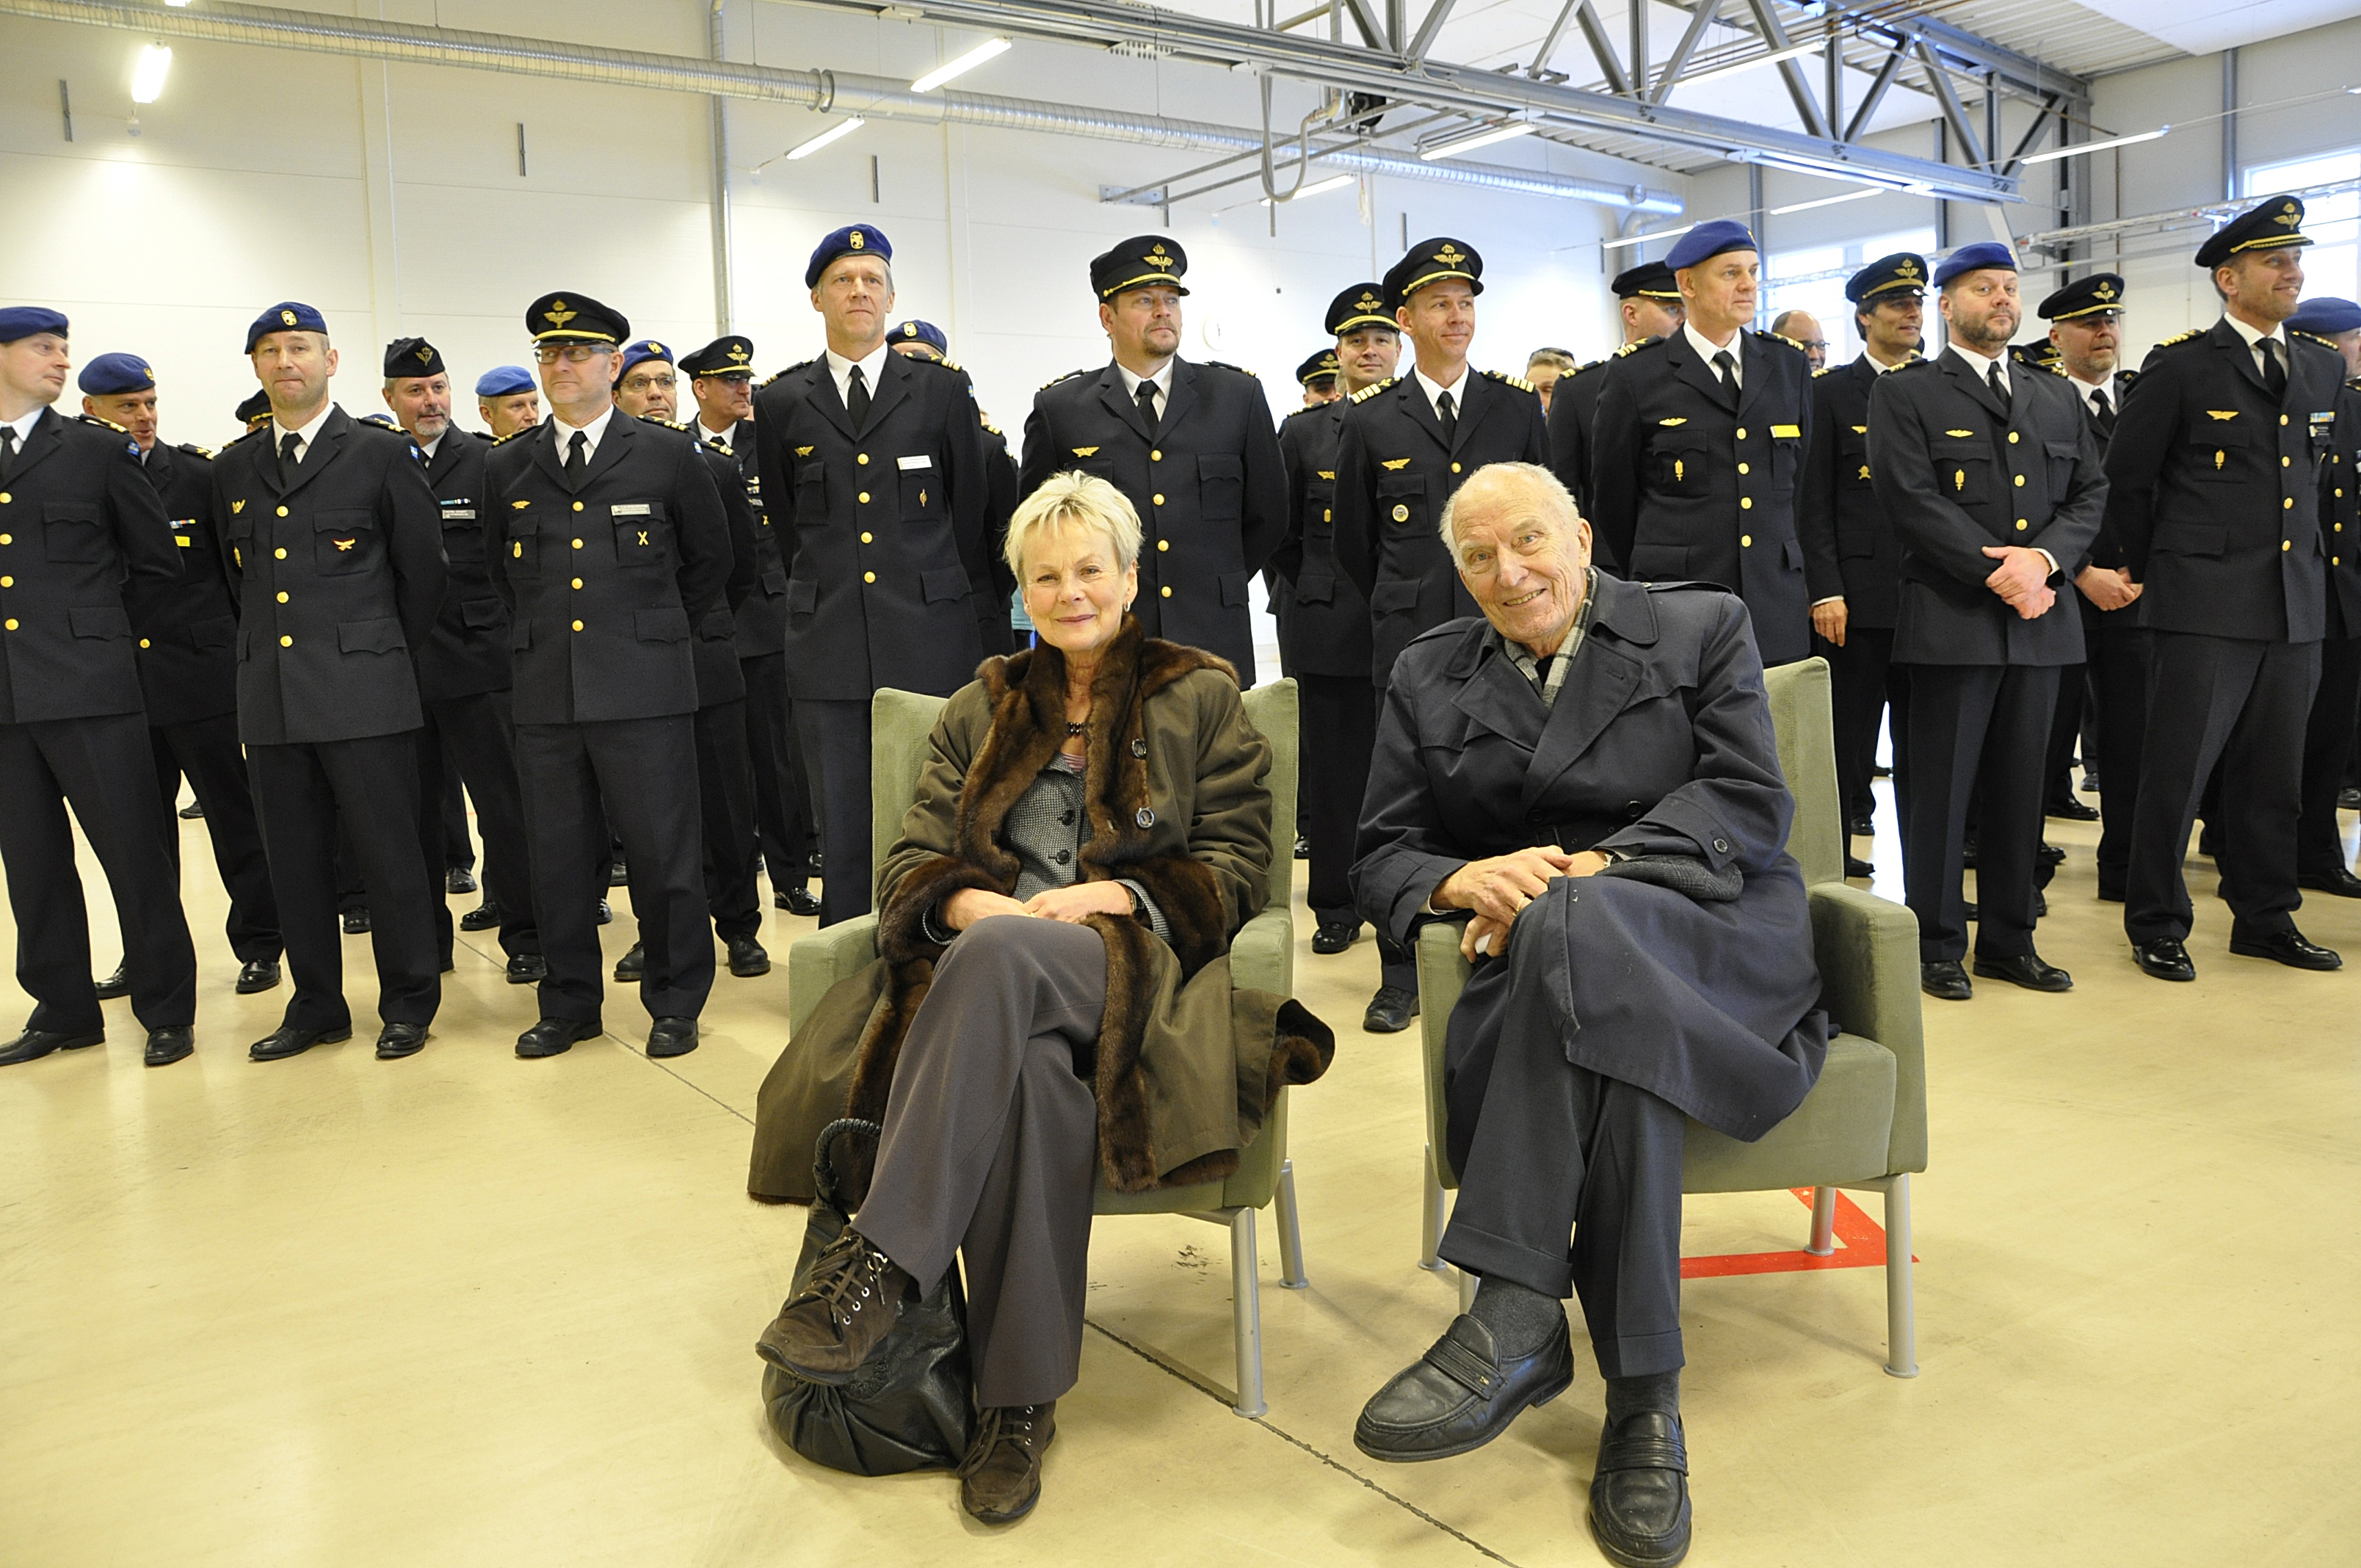 70 års jubilaren Sven-Olof Olsson sitter tillsammans med landshövding Elisabeth Nilsson. Bakom står alla 25 års jubilarer.